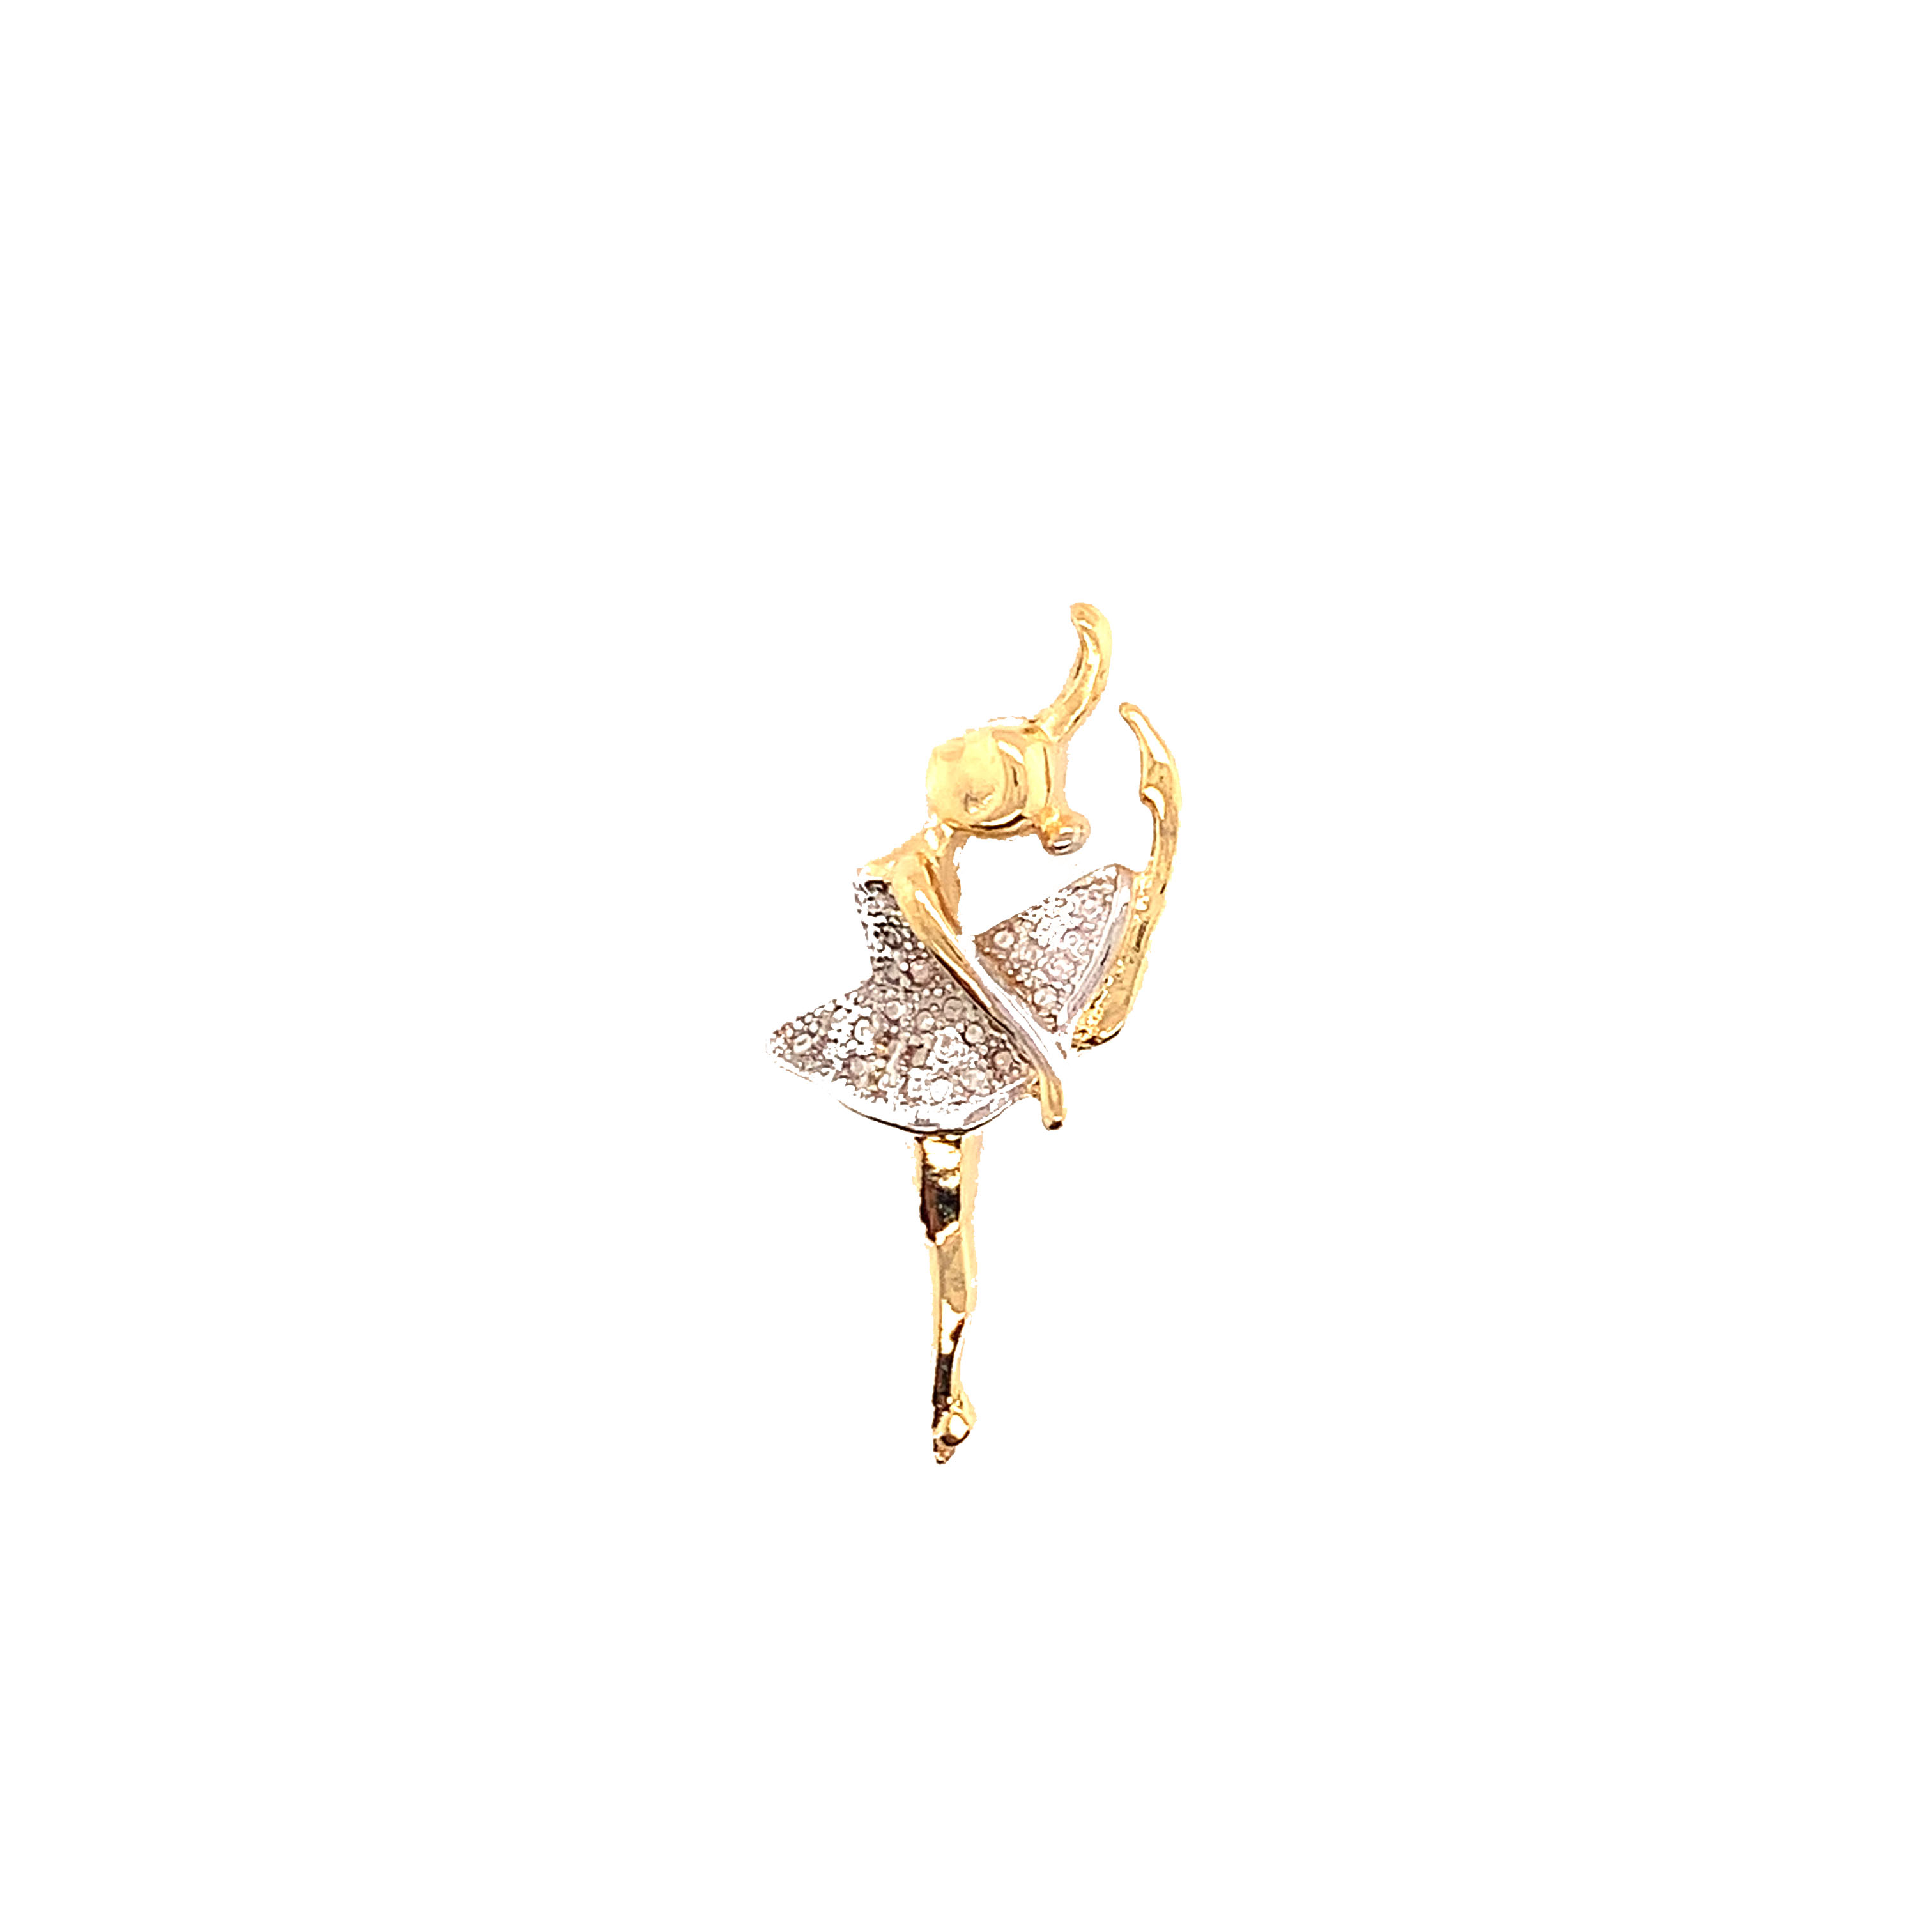 Ballerina Pendant - Gold Filled